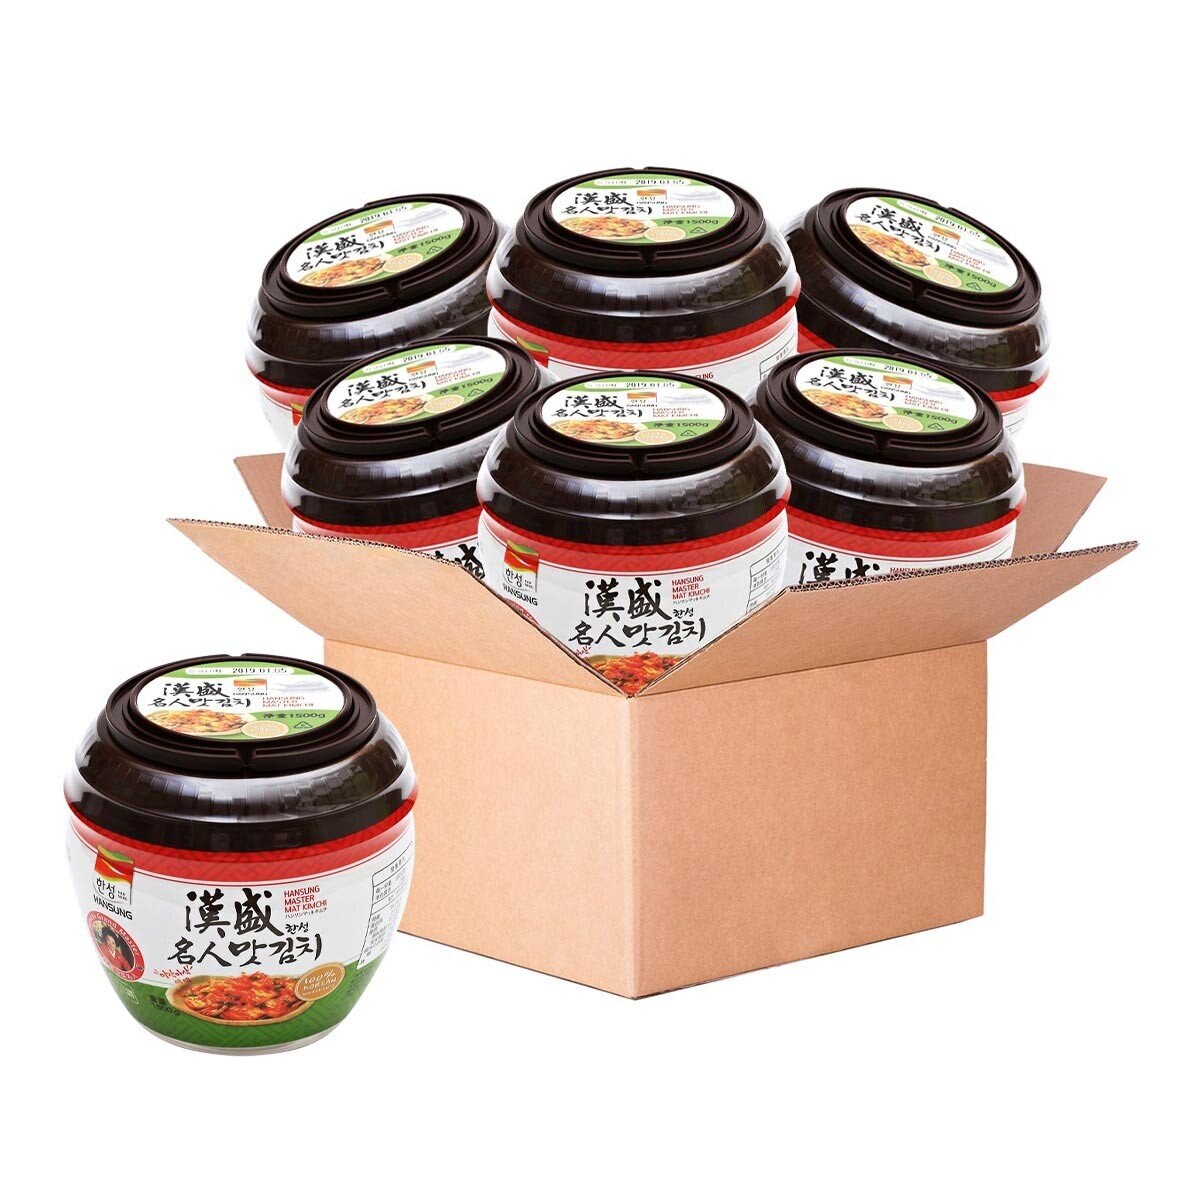 漢盛 泡菜切片罐裝 1.5公斤 X 6罐 僅配送至台中市部分區域